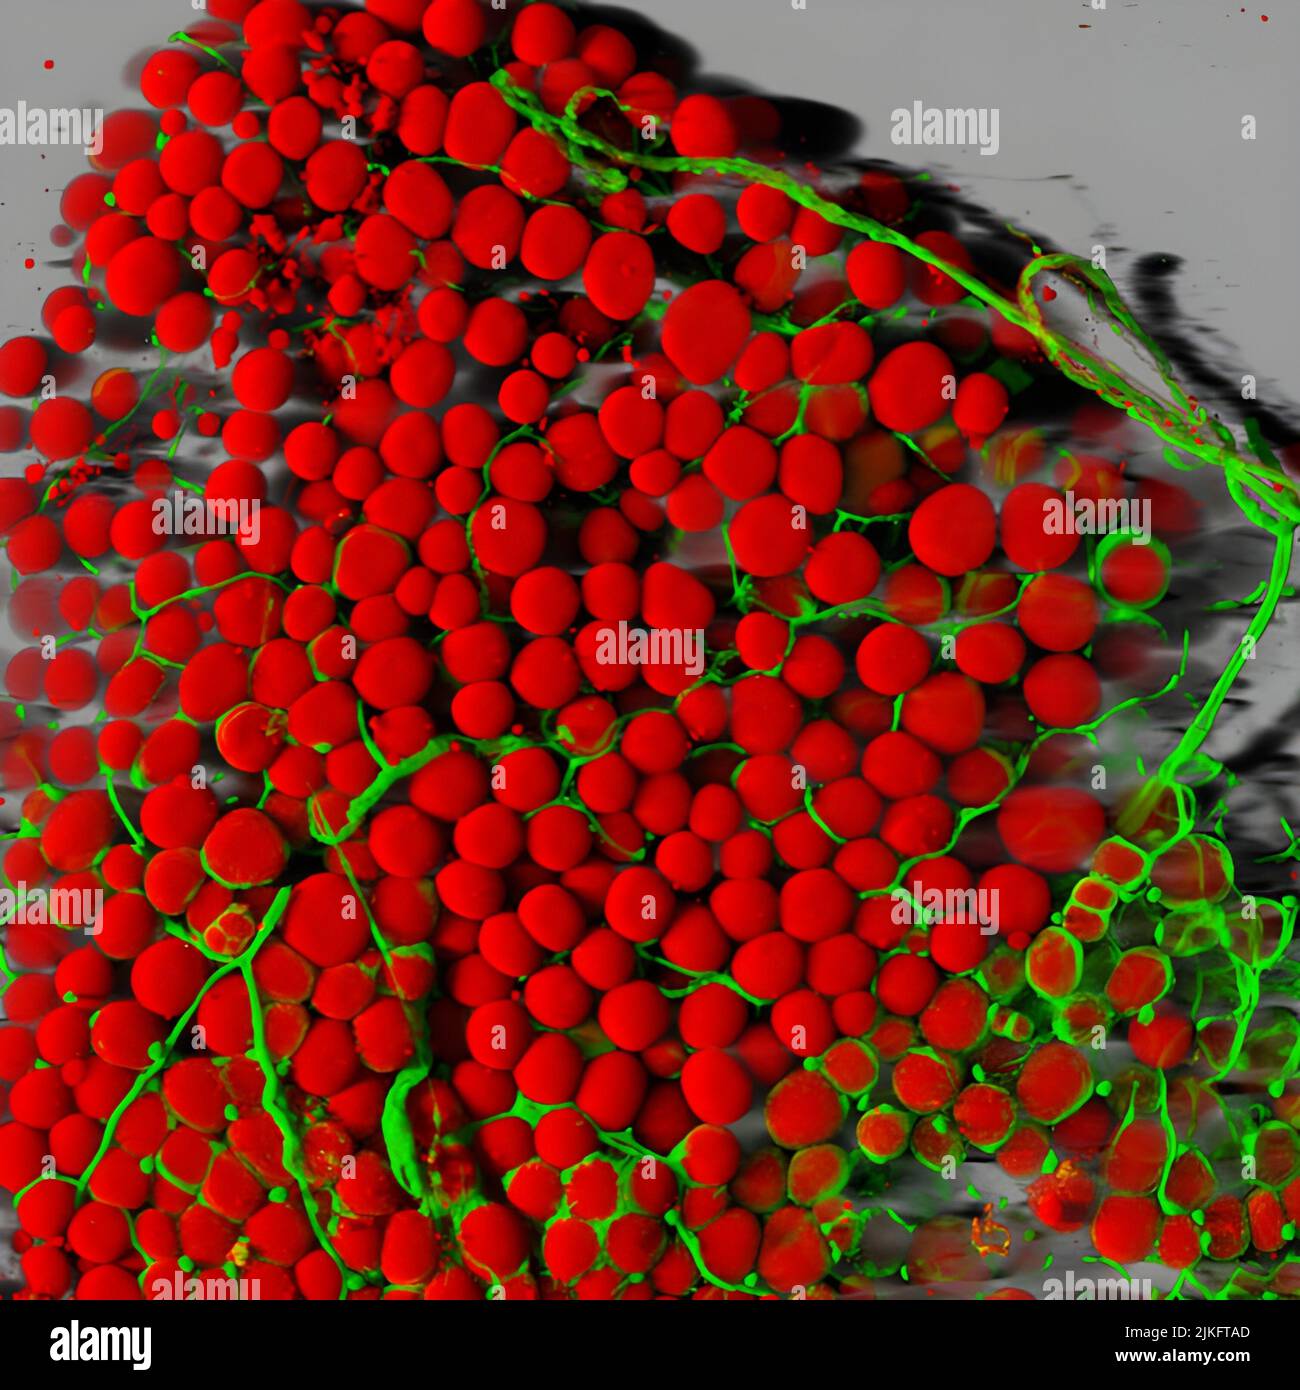 Le cellule grasse di un topo (rosso) sono visualizzate circondate da una rete di vasi sanguigni (verde). Le cellule grasse immagazzinano e rilasciano l'energia, proteggono gli organi e i tessuti nervosi, ci isolano dal freddo e ci aiutano ad assorbire le vitamine importanti Foto Stock